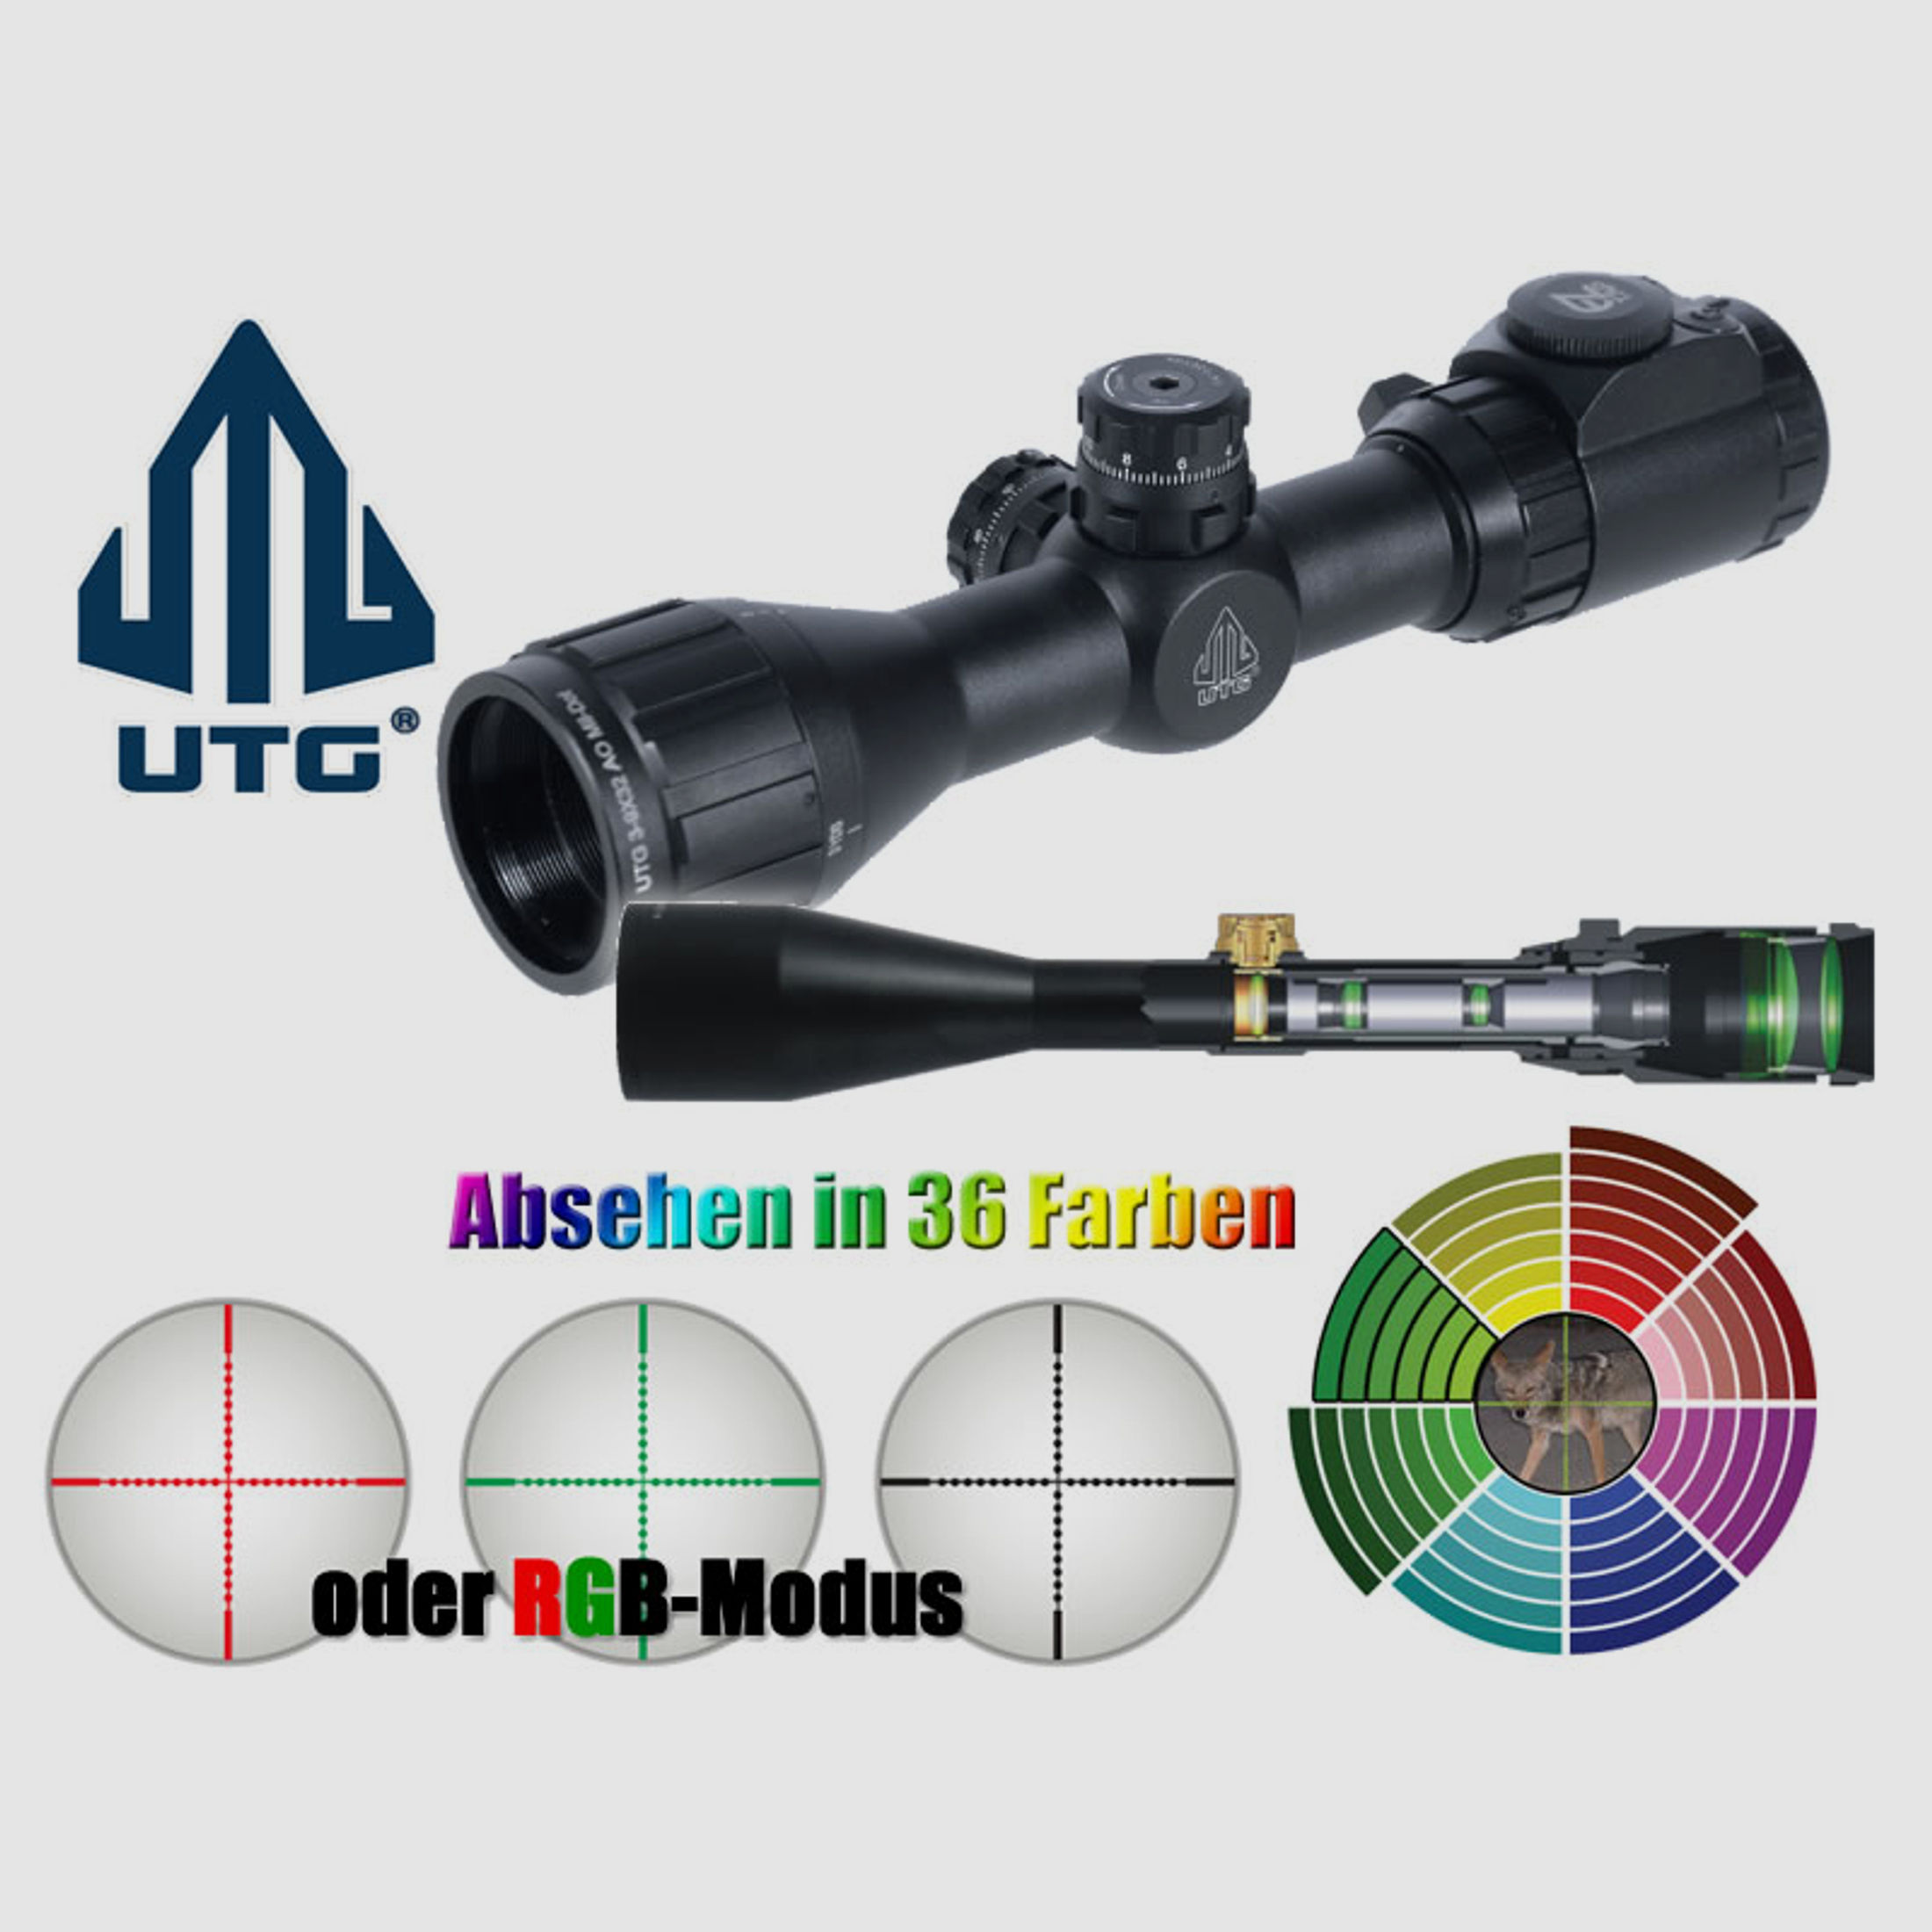 Zielfernrohr UTG BUG BUSTER 1 Zoll 3-9x32 AO, RGB+36 Farben Mil-Dot, Zero Lock, mit 11 mm und 22 mm Montage